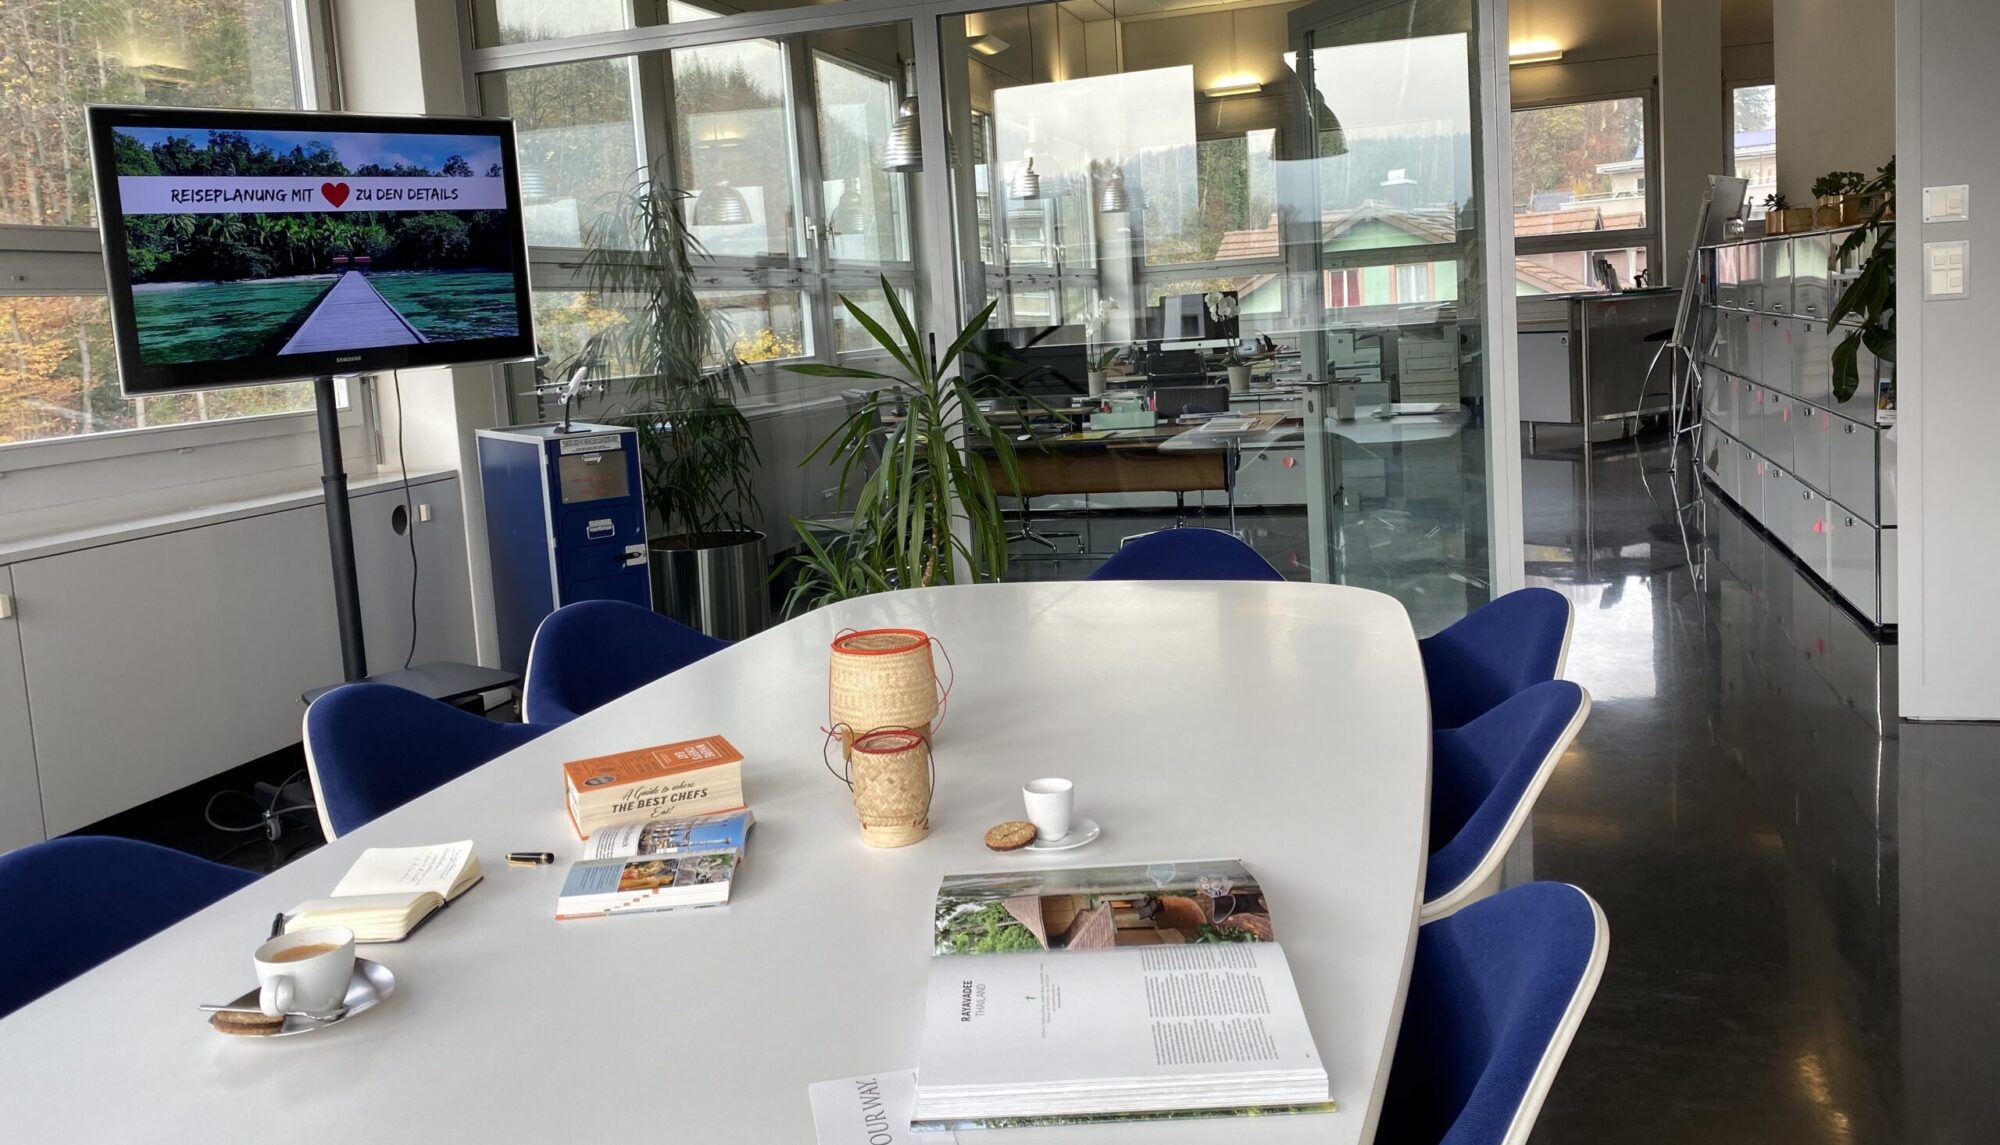 Geräumiges Büro von Simtis Reisen weltweit, in Sitzungszimmer liegen Reiseführer, Karten, und ein Kaffee bereit, am Fernsehbildschirm steht der Schriftzug "Reiseplanung mit Liebe zu den Details".